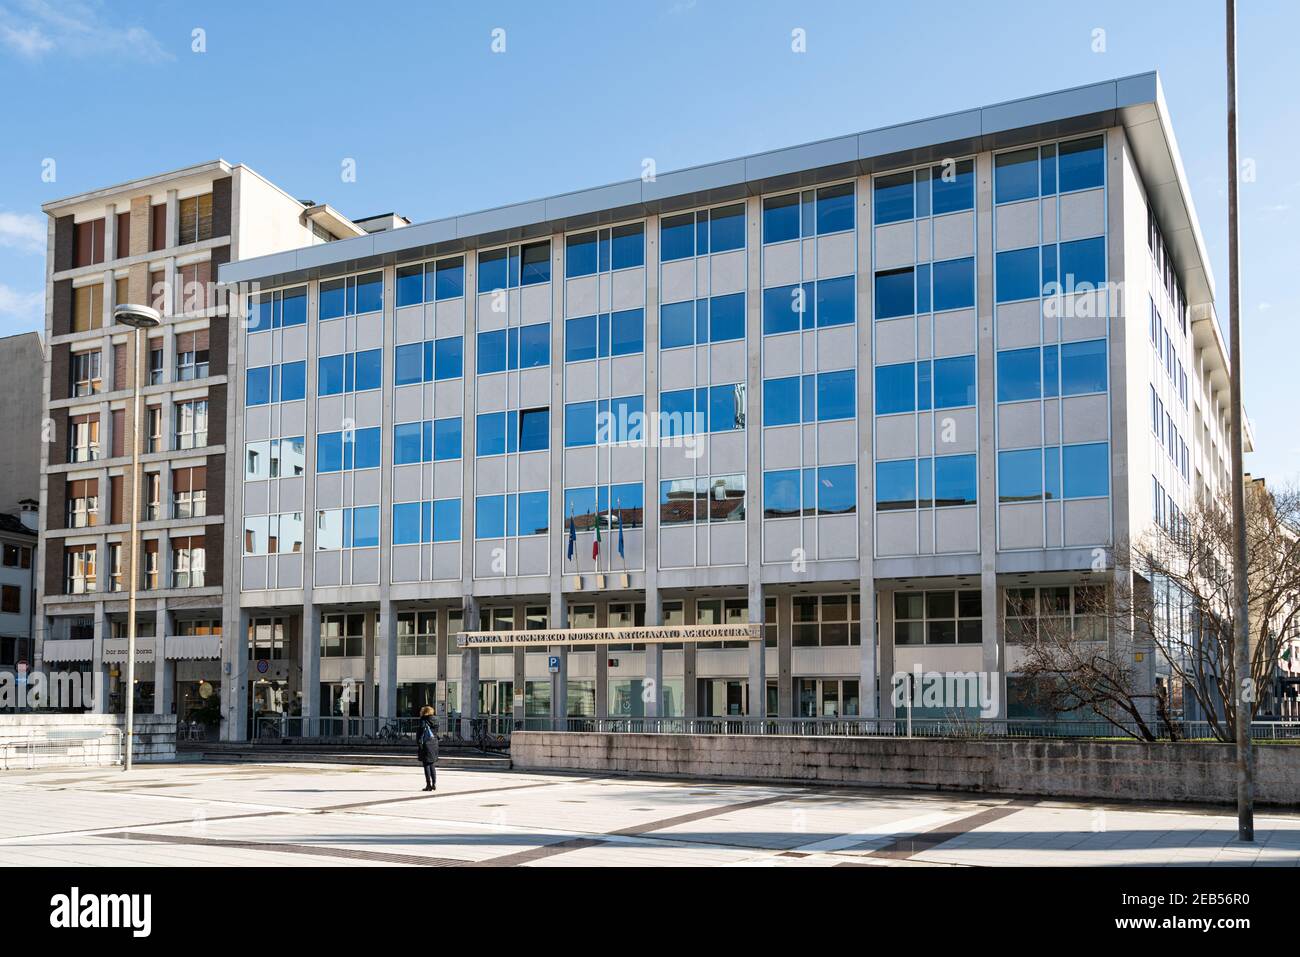 Udine, Italie. 11 février 2020. Vue extérieure du bâtiment de la chambre de commerce dans le centre-ville Banque D'Images